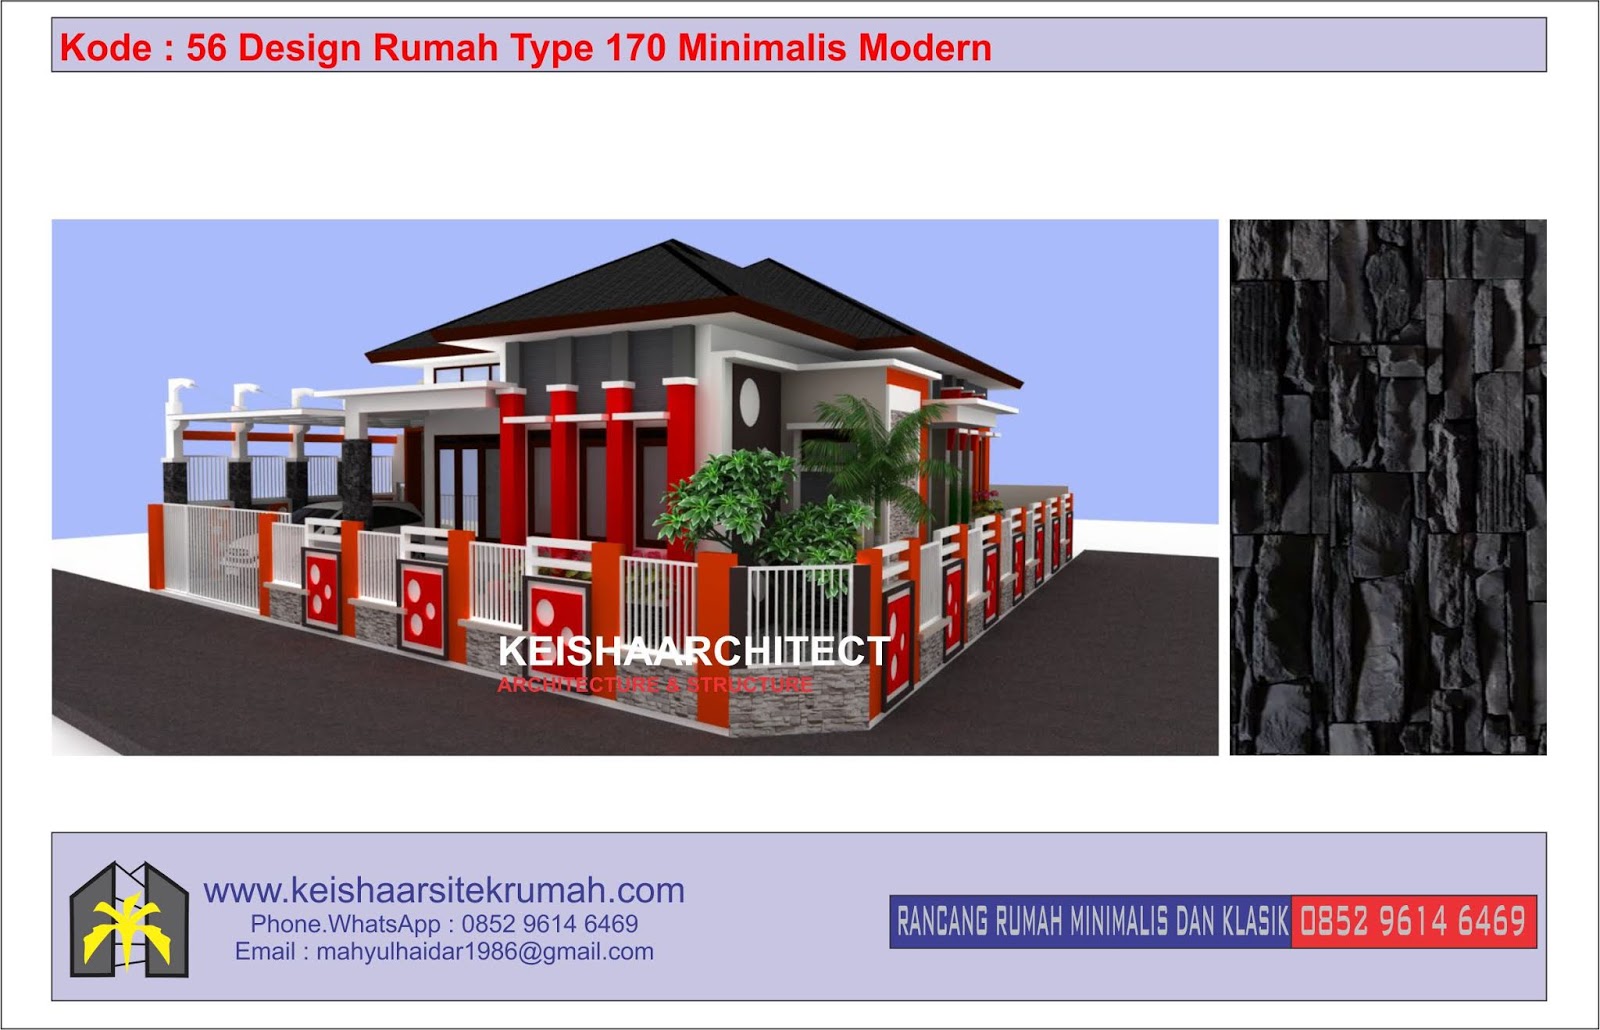 Kode 56 Design Rumah Type 170 Minimalis Lokasi Ulee Kareng